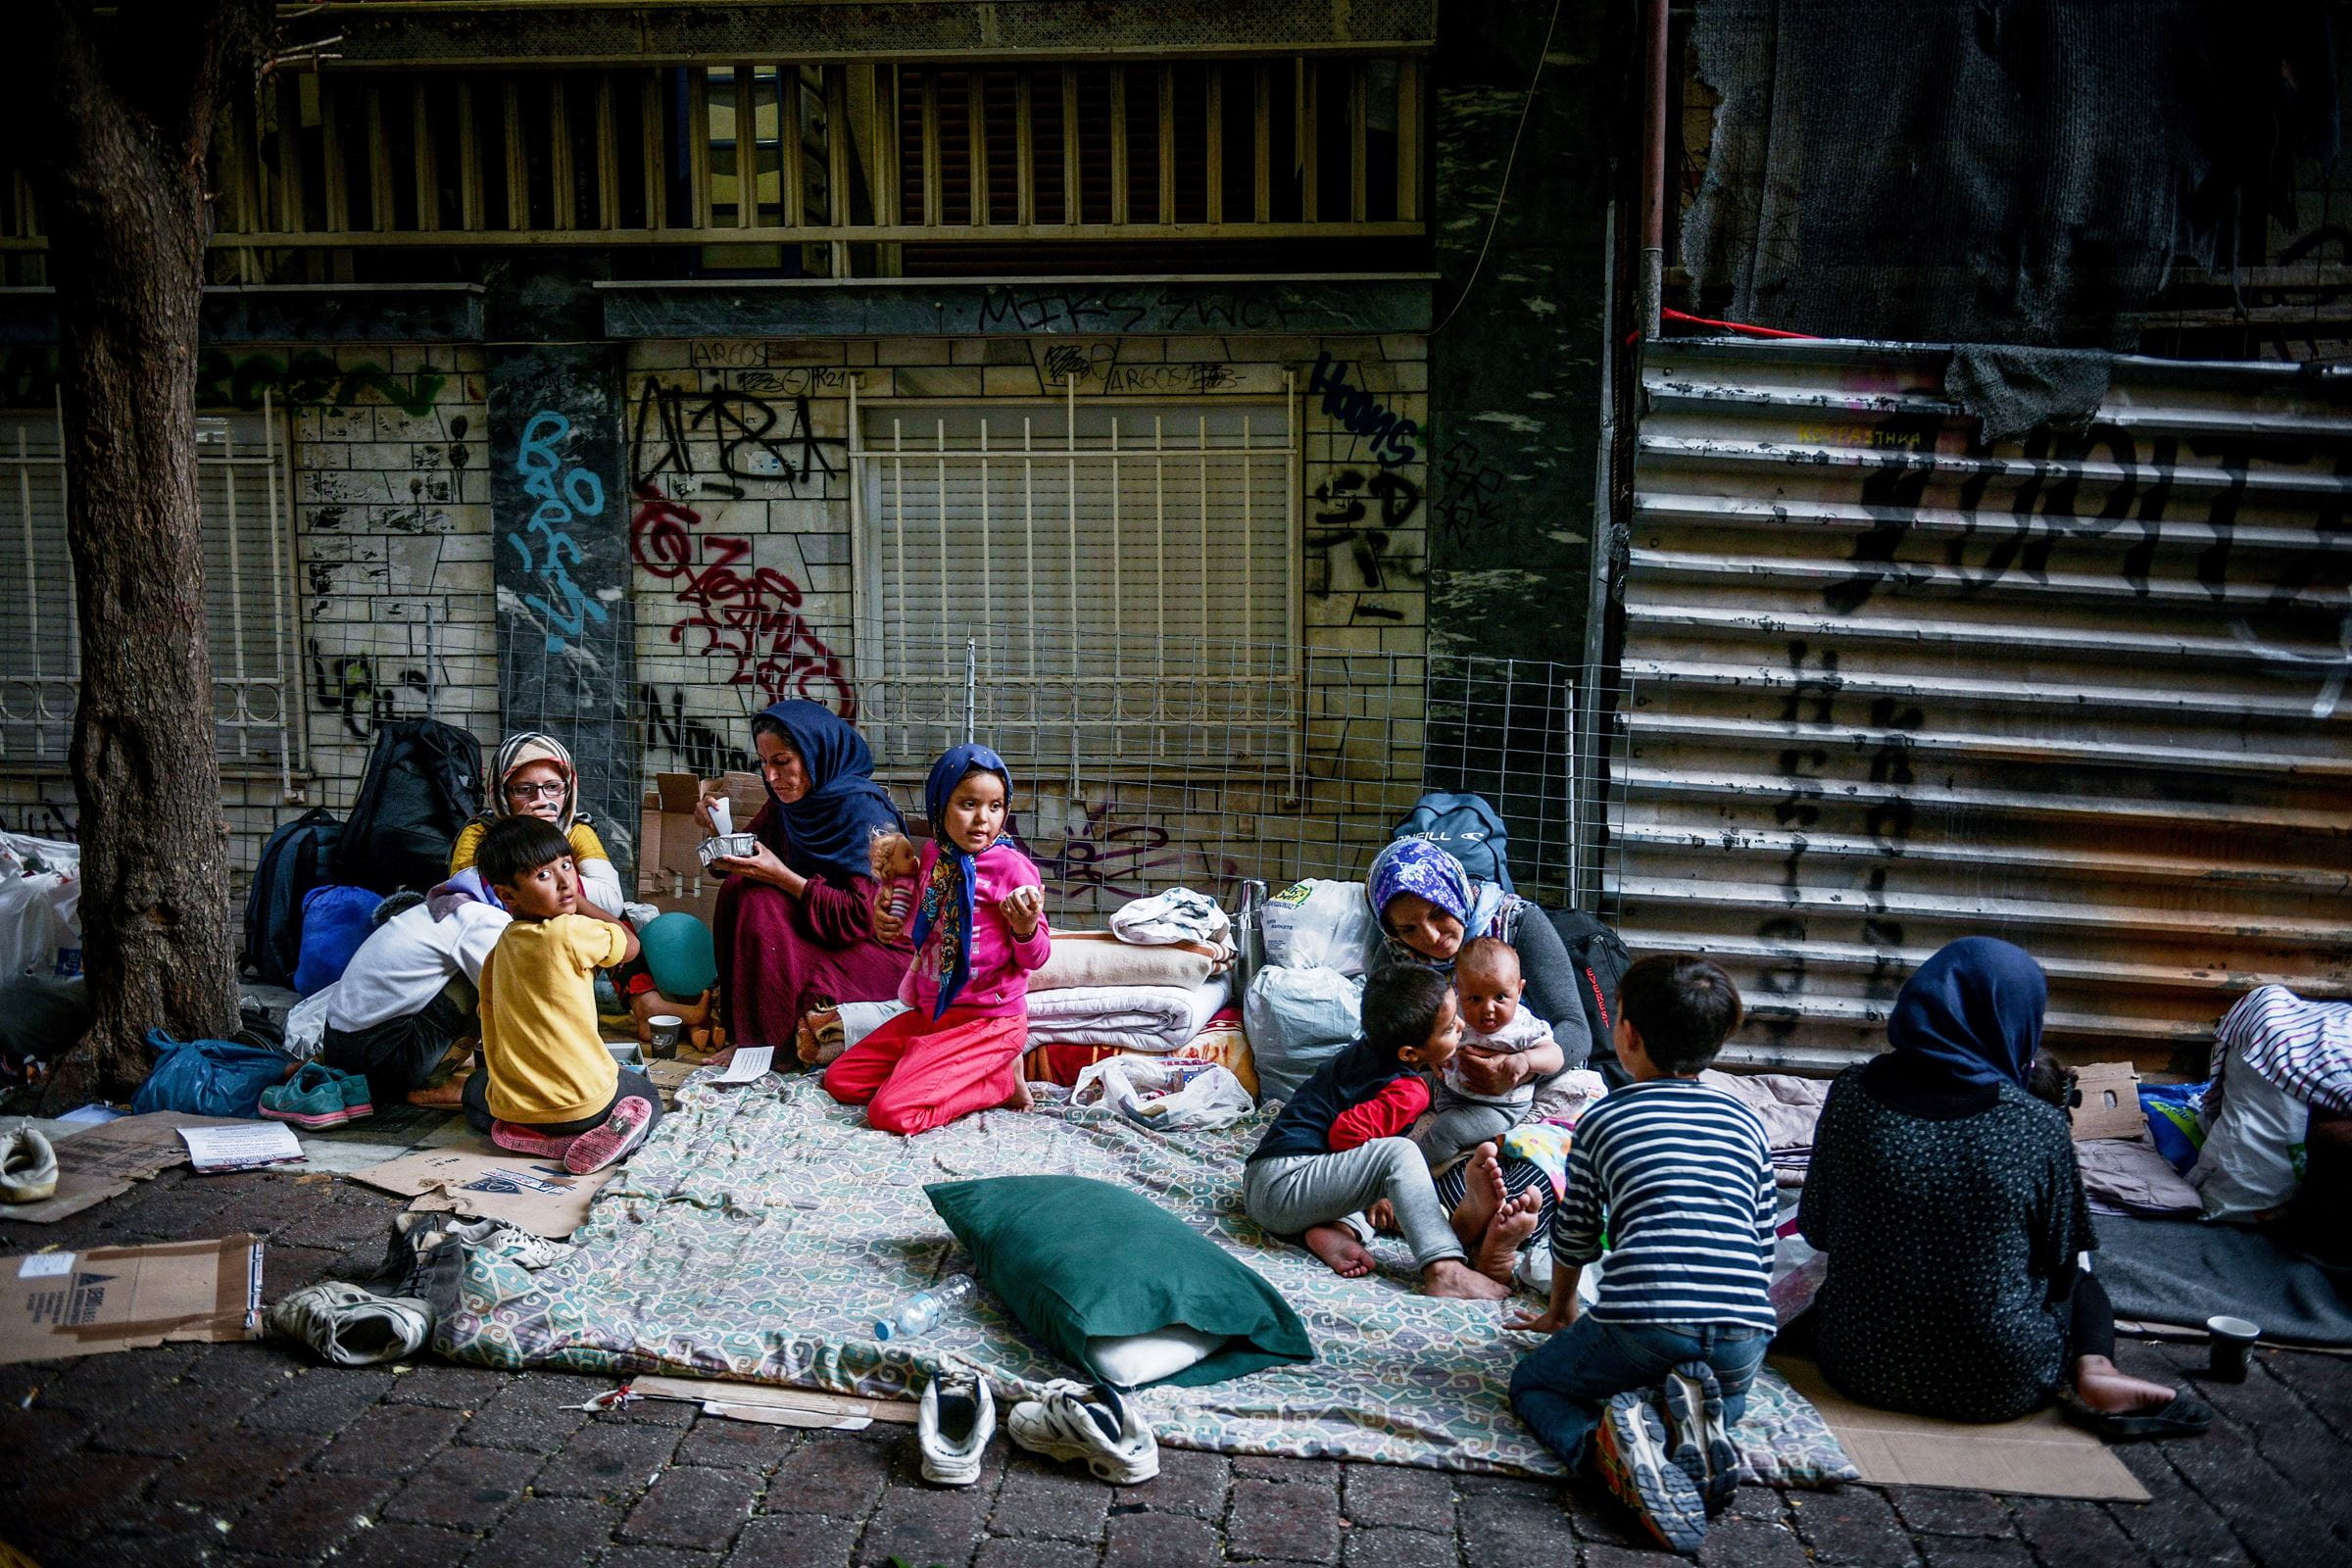 Frauen und Kinder, die geflüchtet sind, sitzen auf der Straße auf Decken und Kartons. (Quelle: picture alliance/Tatiana Bolari)